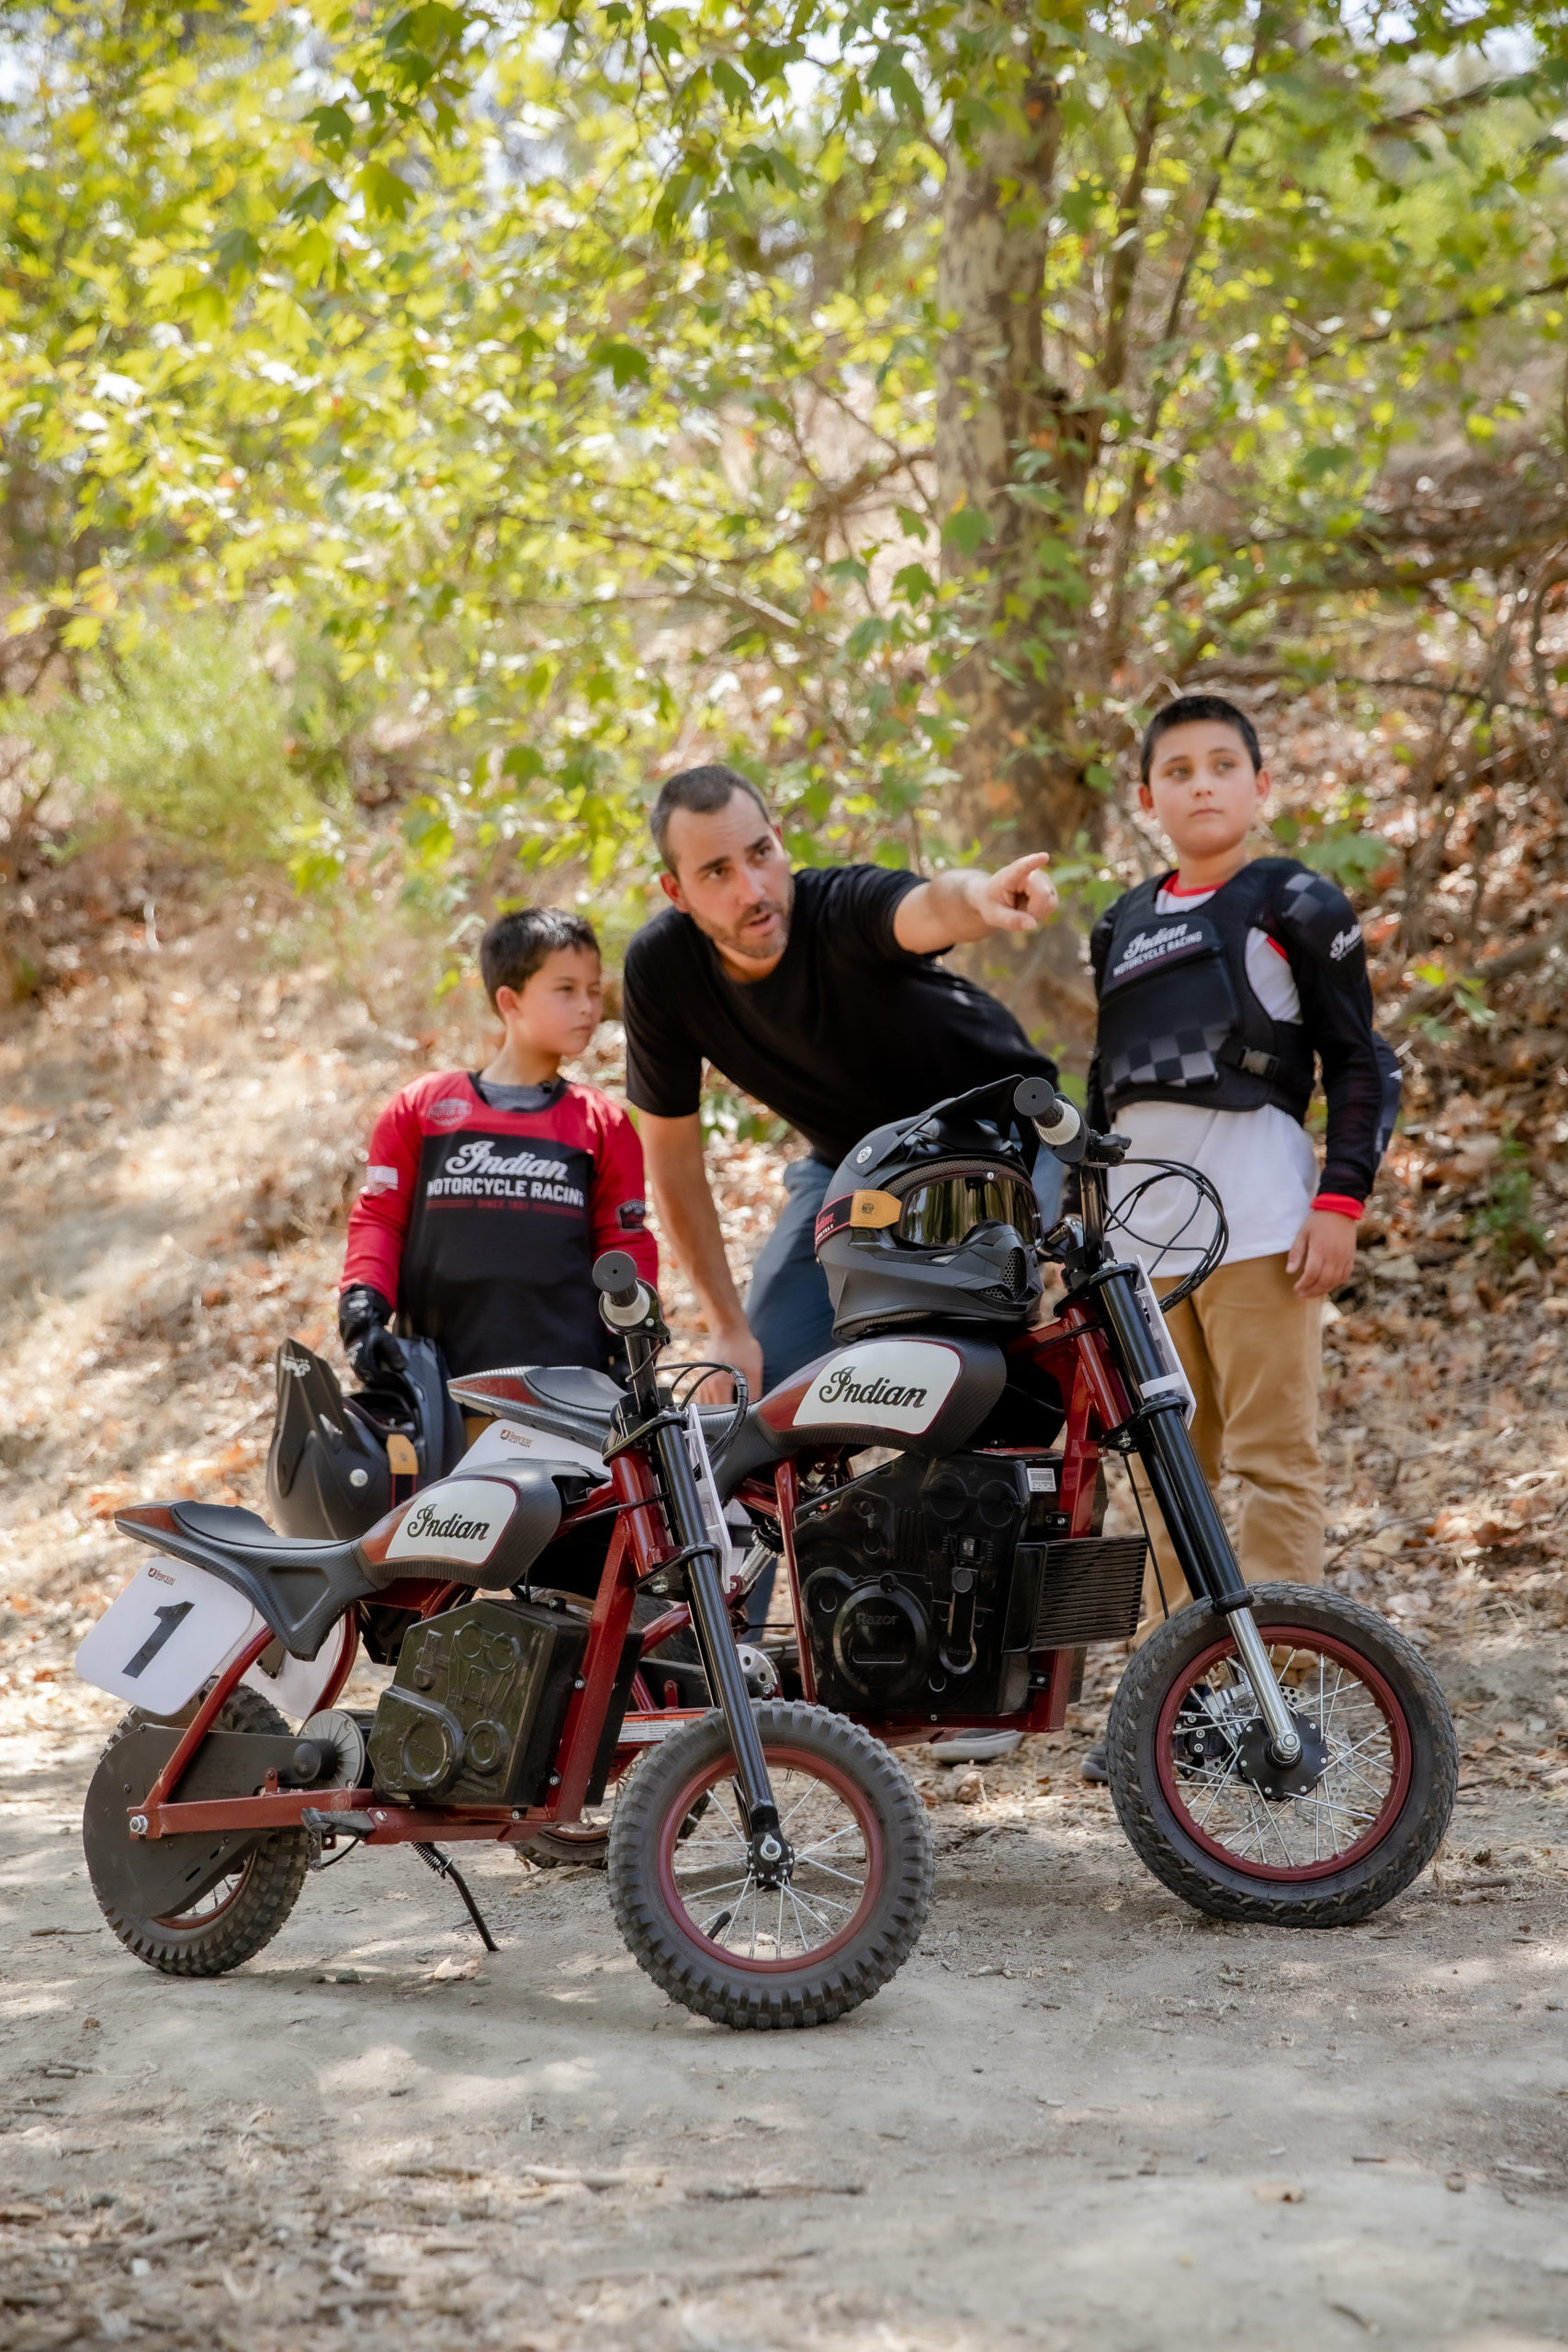 一个成熟的骑手和两个年轻的骑手正在试用来自印度摩托车公司的新sFTR迷你摩托车——一种小型骑行社区可用的电动青年自行车